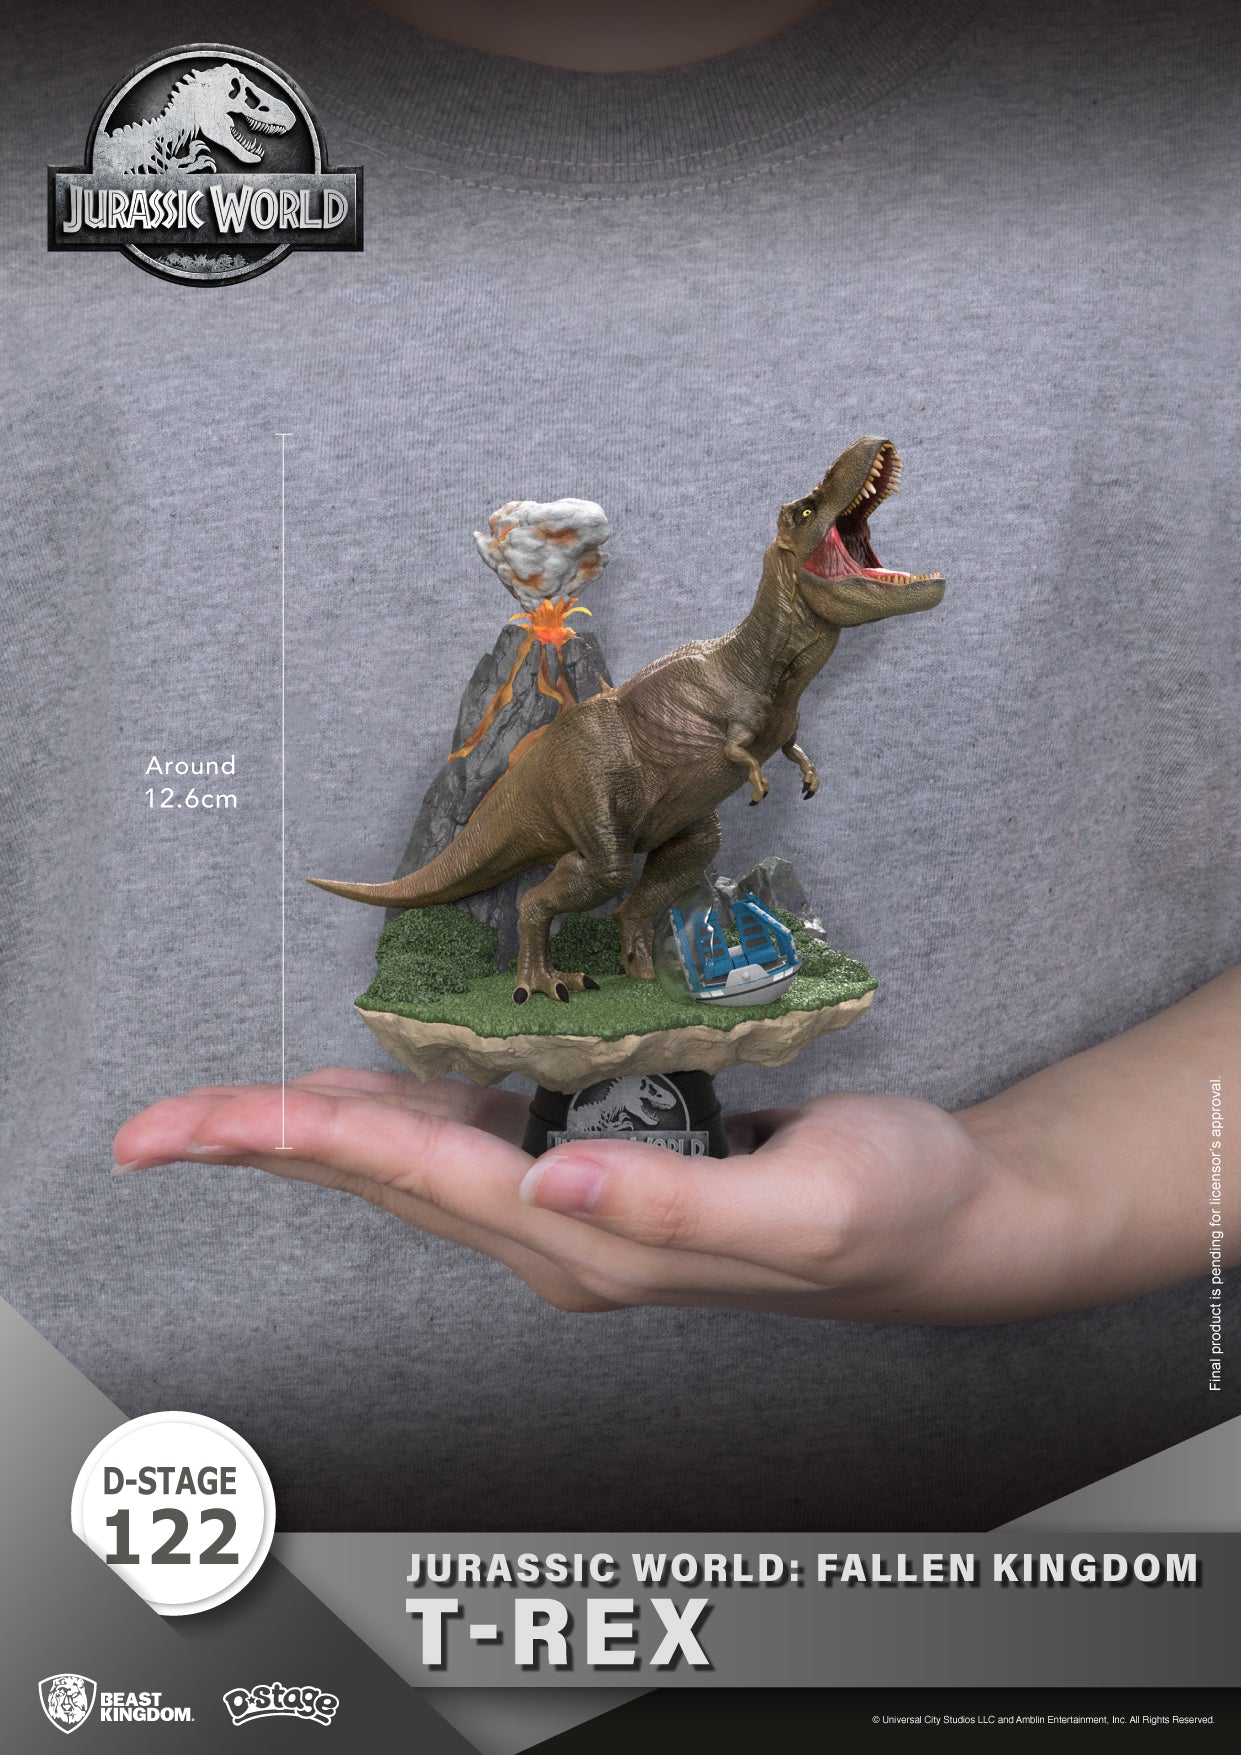 https://www.beast-kingdomsea.com/cdn/shop/products/DioramaStage-122-JurassicWorld-FallenKingdom-T-Rex2_T-Rex08.jpg?v=1691123768